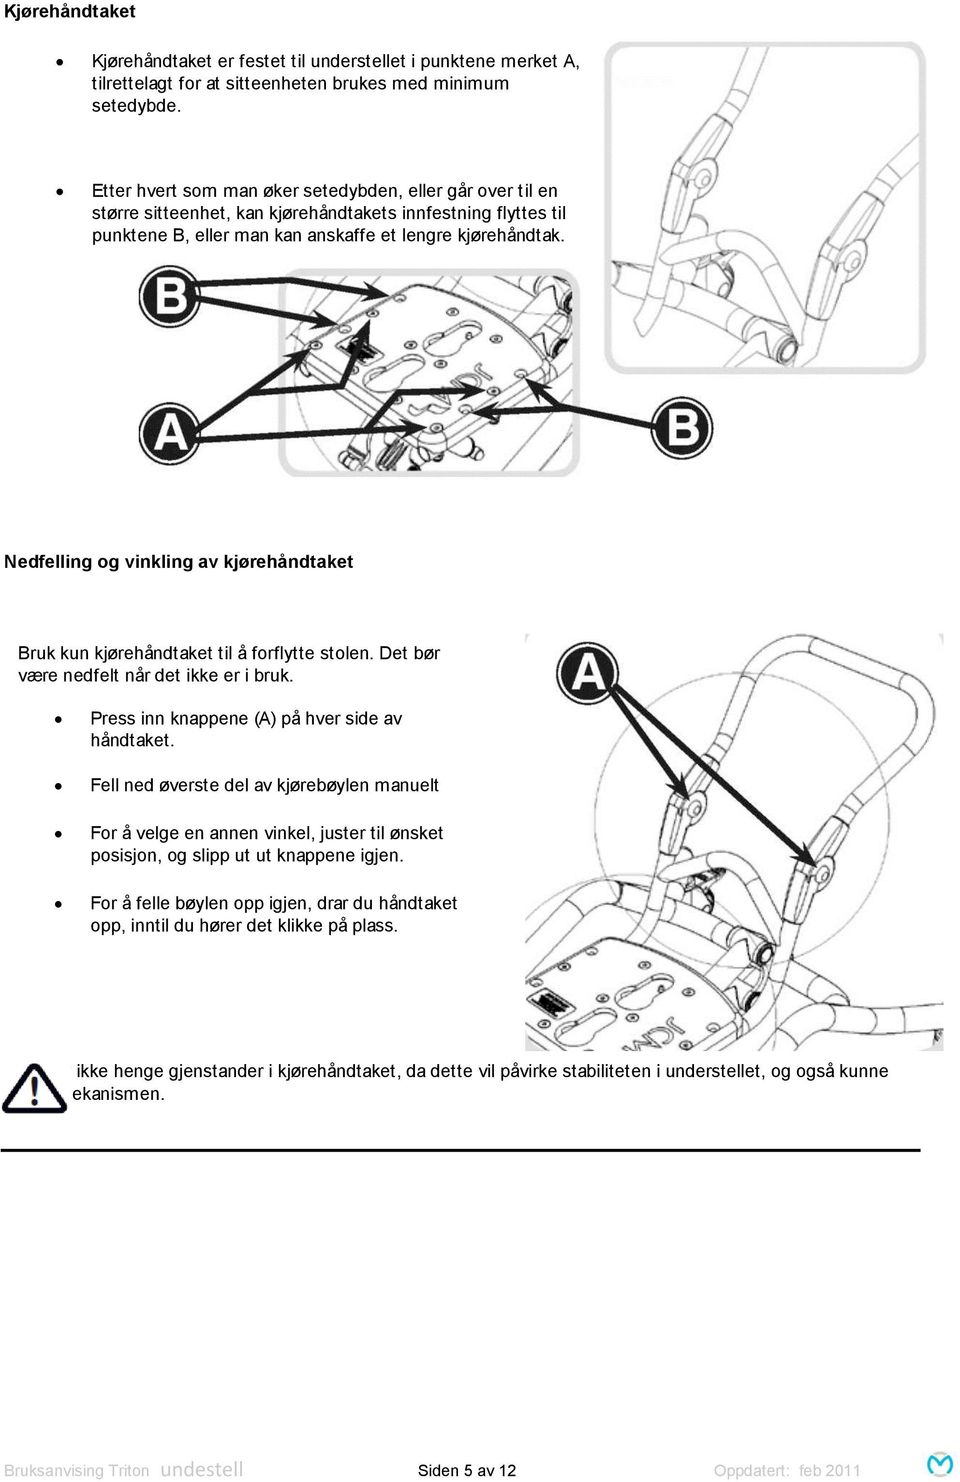 Nedfelling og vinkling av kjørehåndtaket Bruk kun kjørehåndtaket til å forflytte stolen. Det bør være nedfelt når det ikke er i bruk. Press inn knappene (A) på hver side av håndtaket.